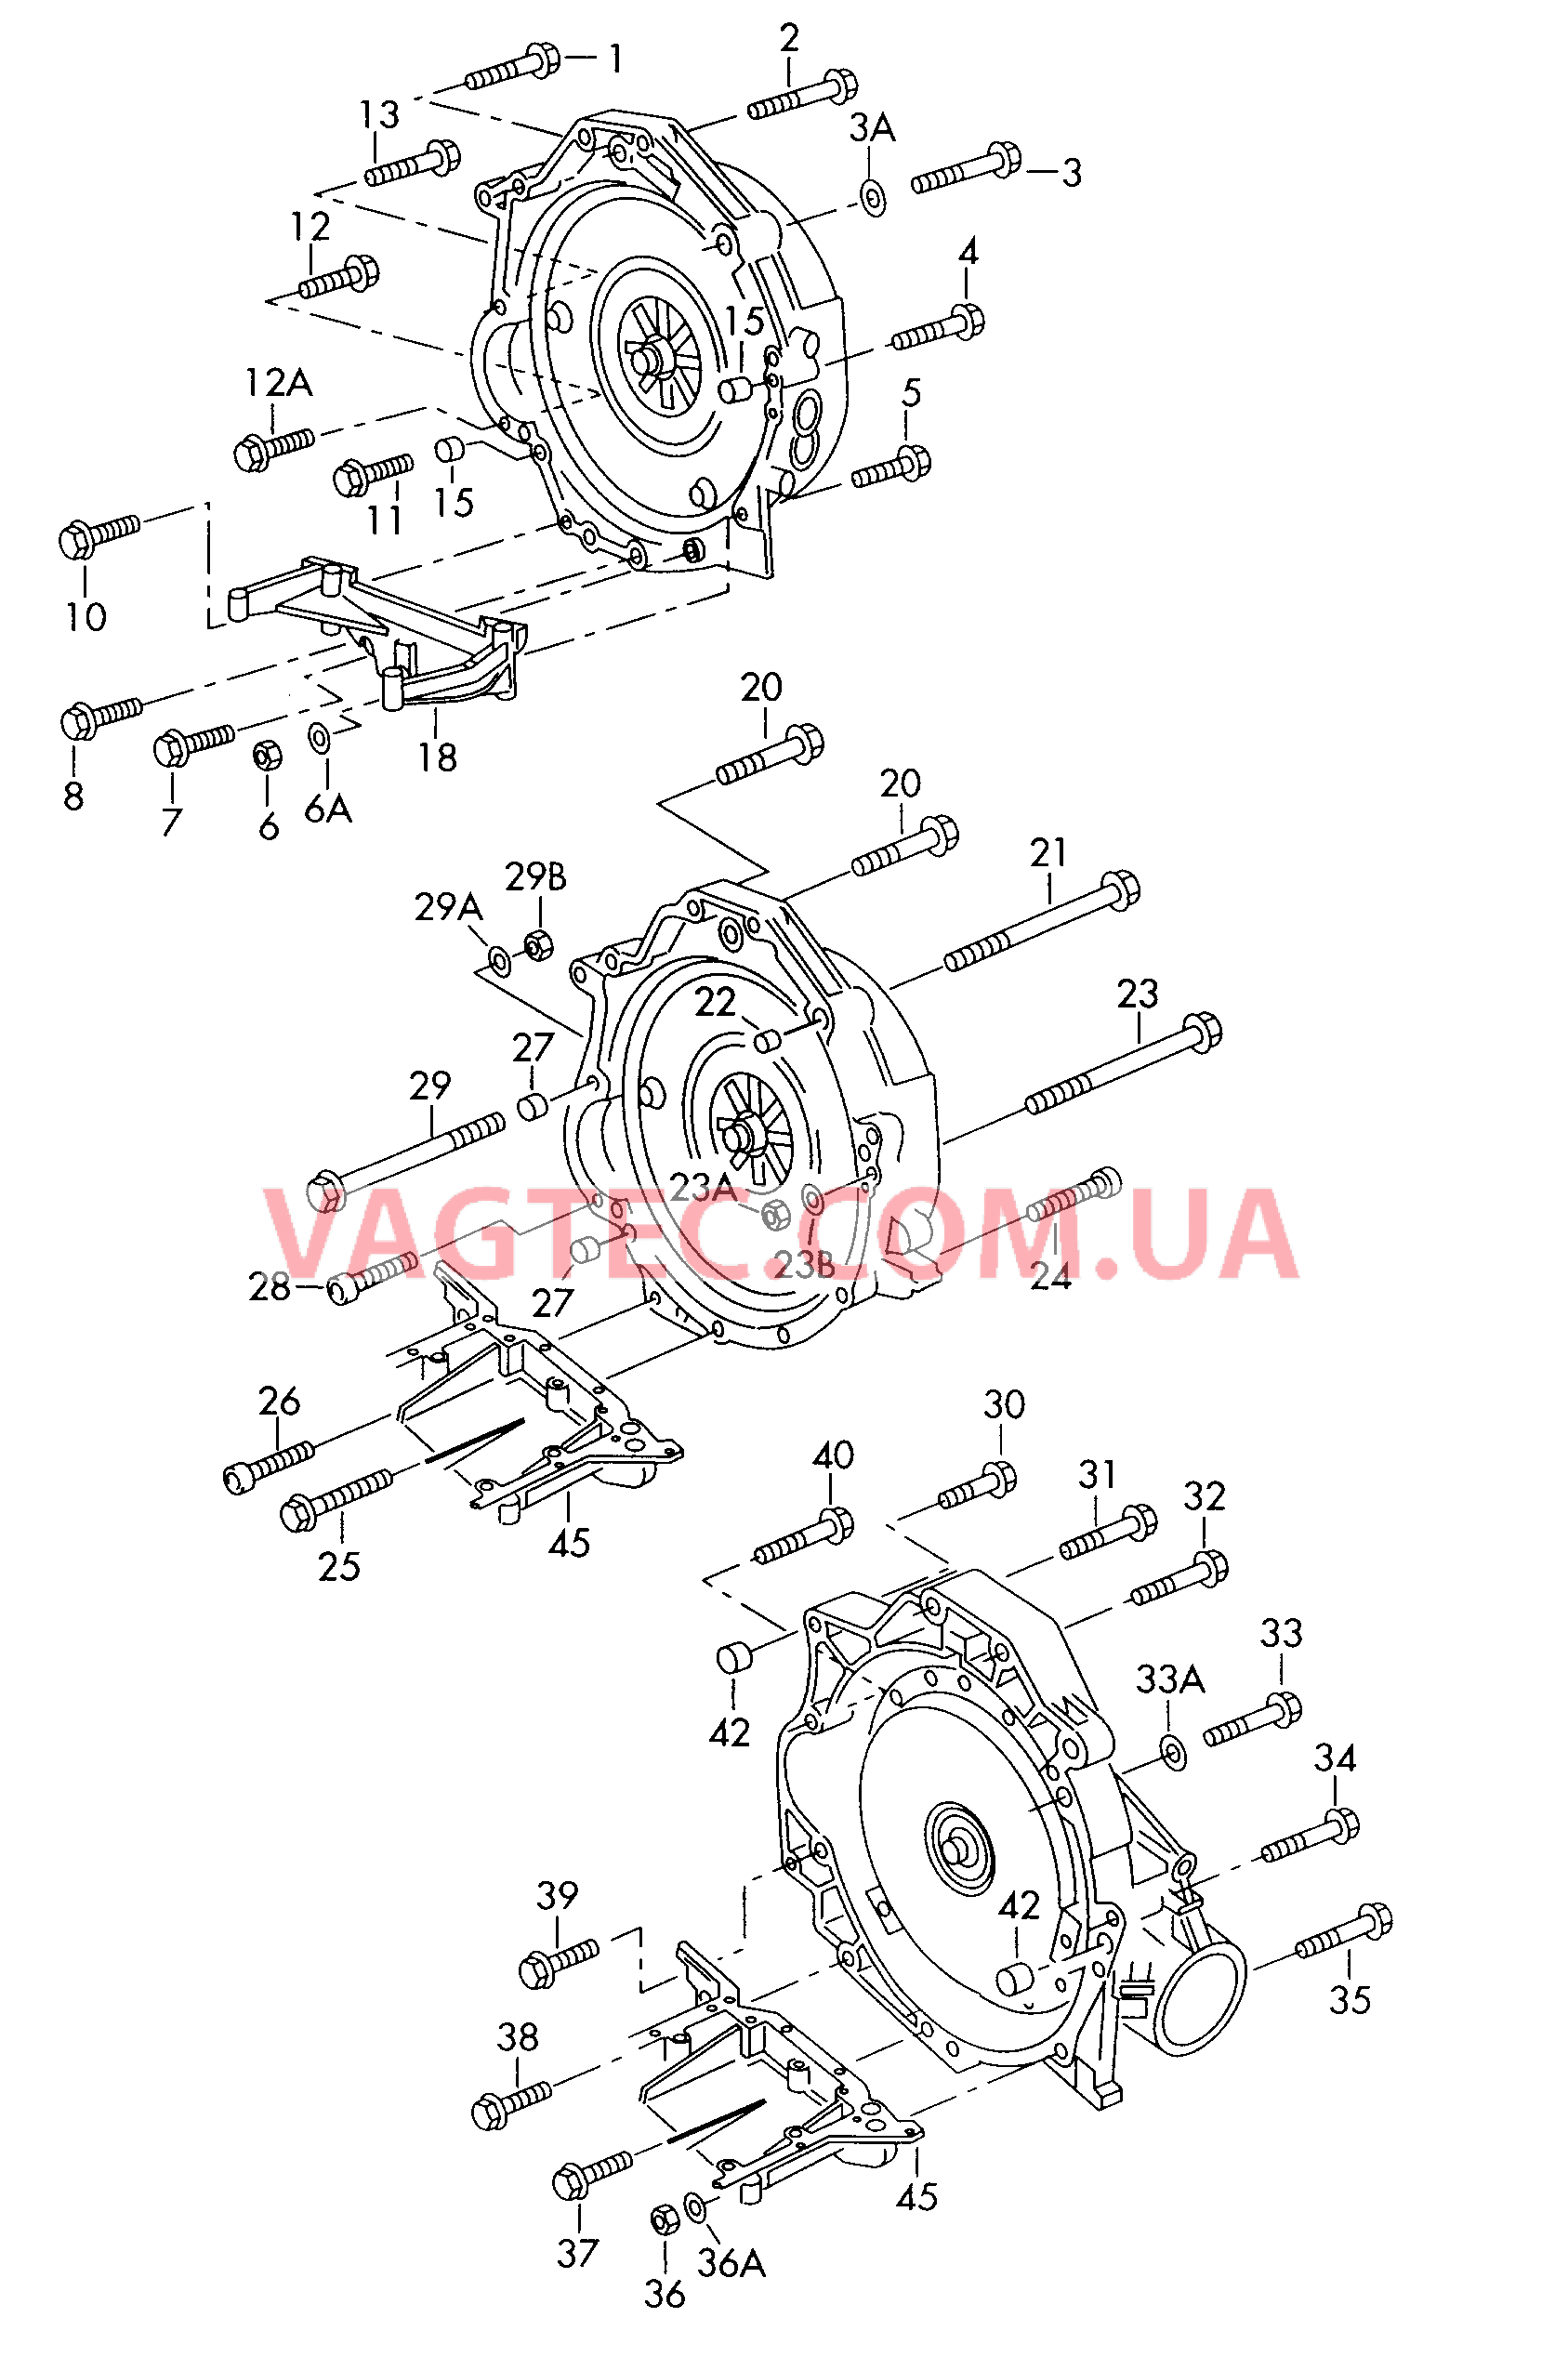  AUDI A4 Детали крепления для двигателя и КП  для 4-ступенчатой АКП для 5-ступенчатой АКП  для AUDI A4 2000